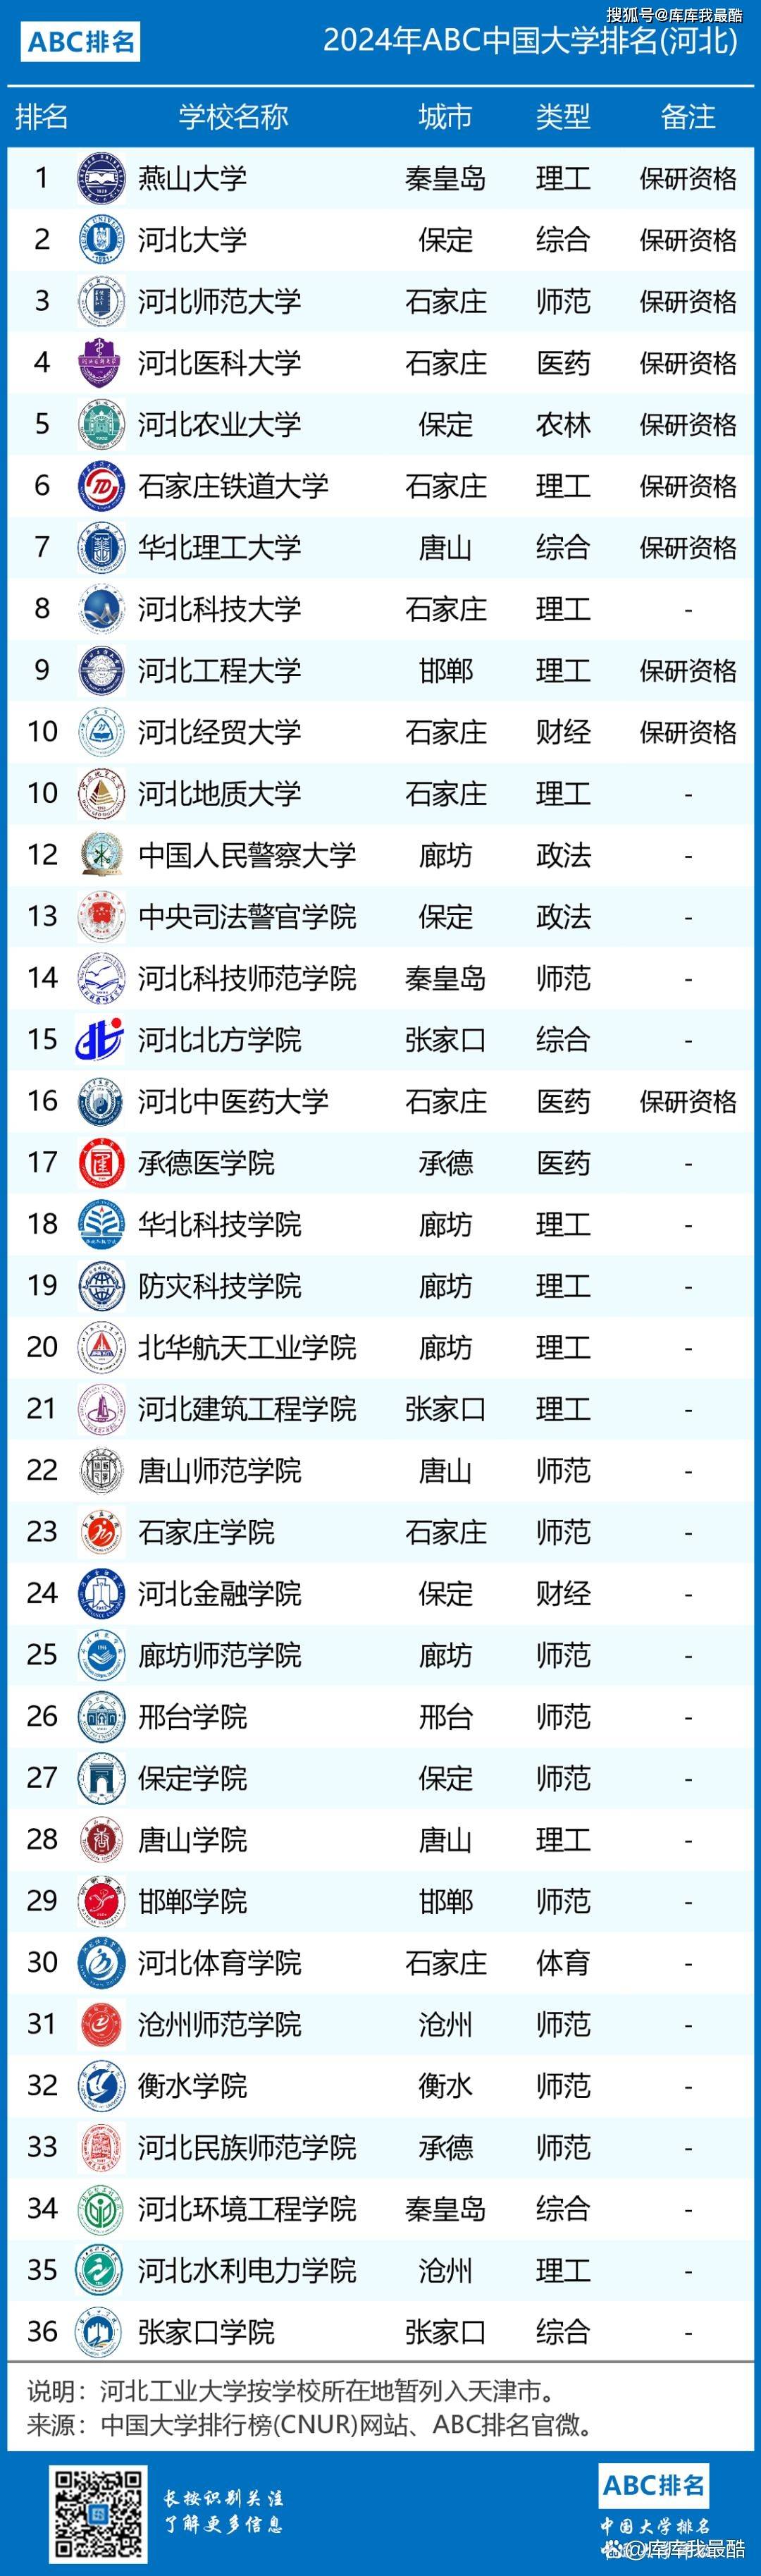 广东省中南大学,湖南大学等高校在湖南省内排名前列,且在全国也有较高